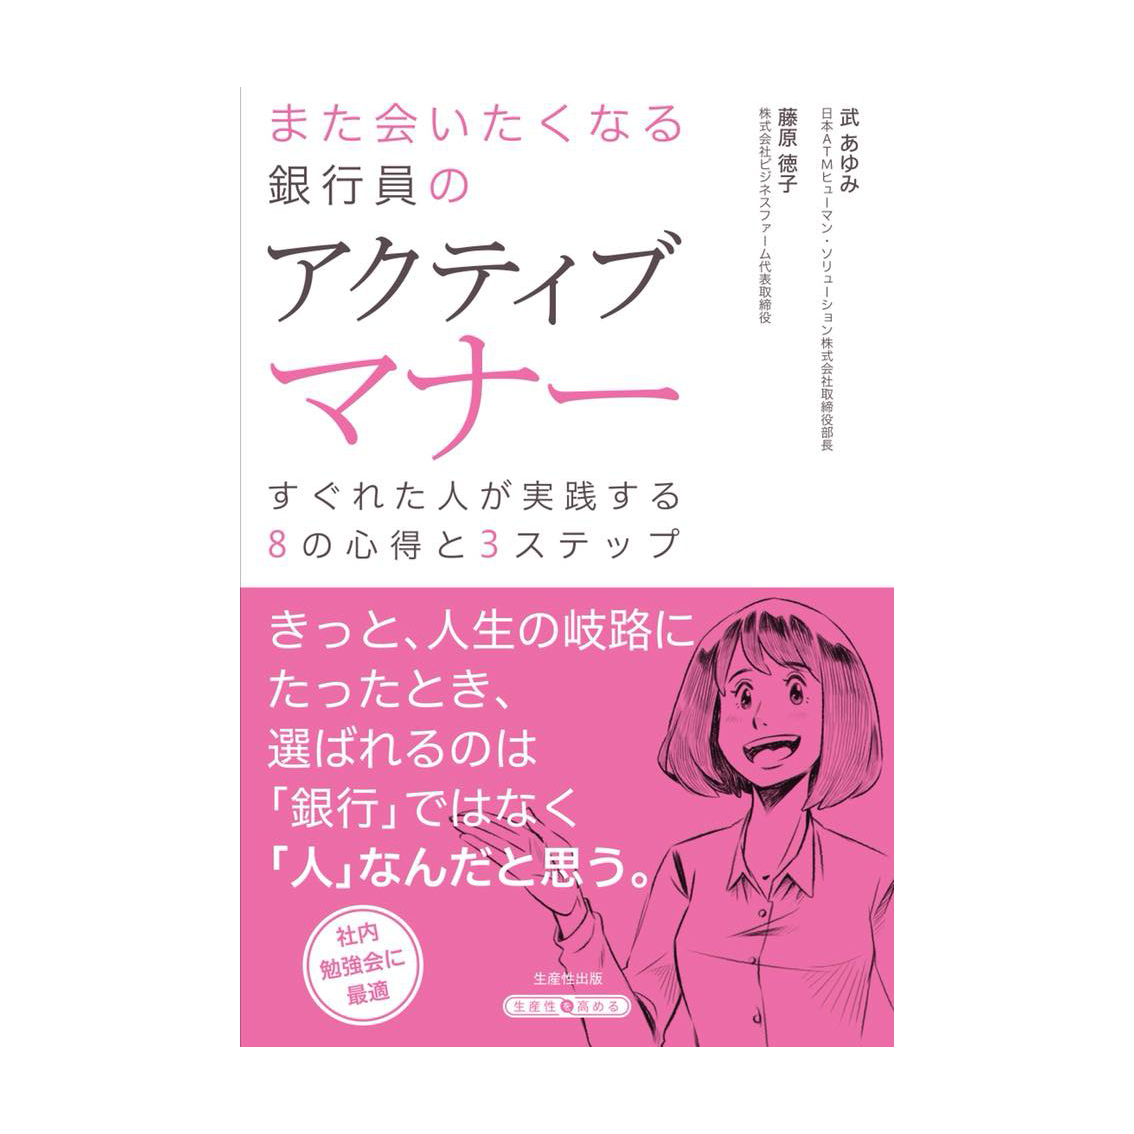 書籍「また会いたくなる銀行員のアクティブマナー」挿絵イラスト ( マナー本 ) ?>